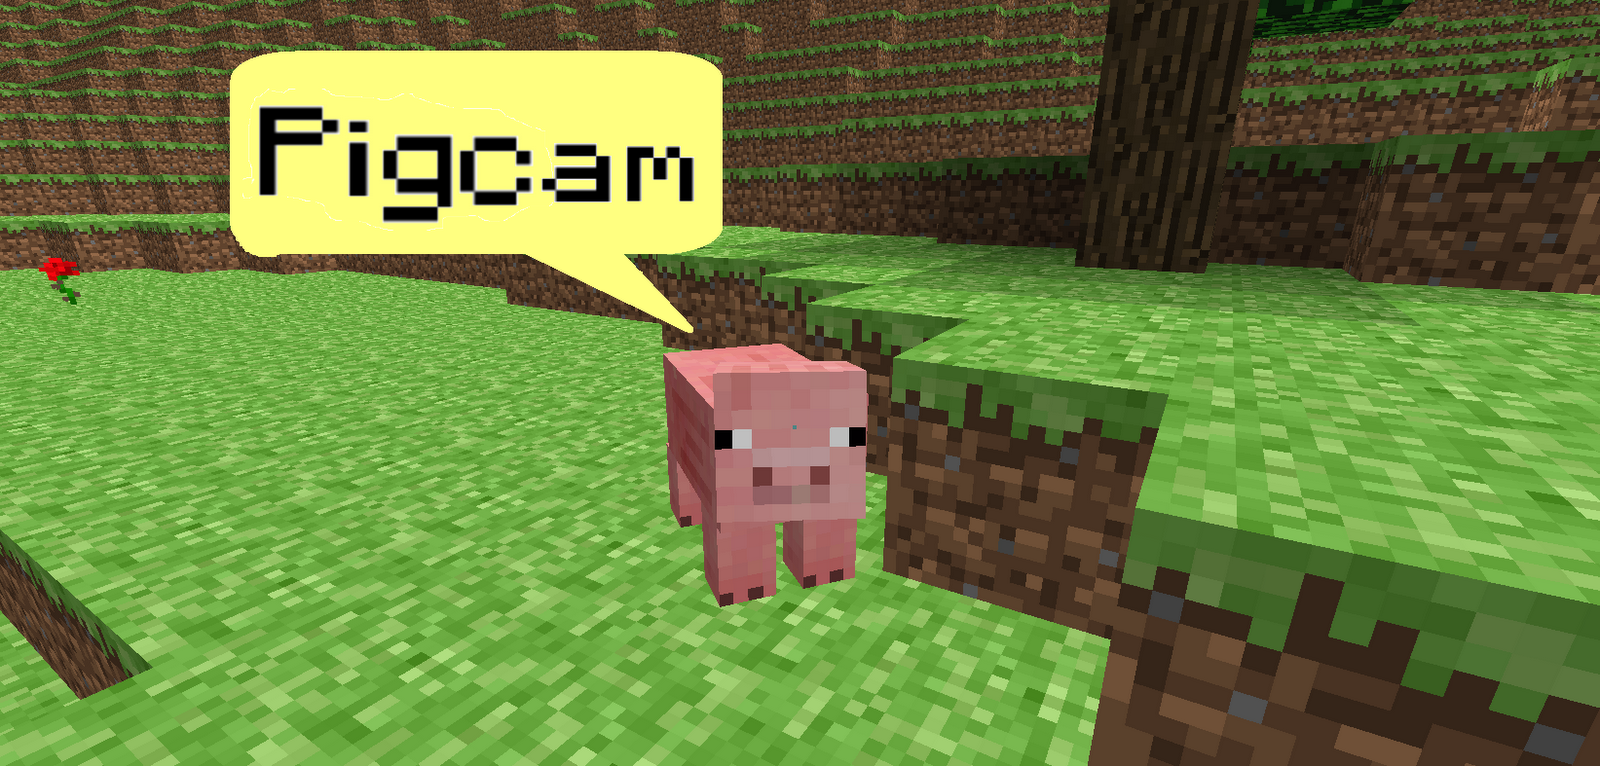 Pig-Cam